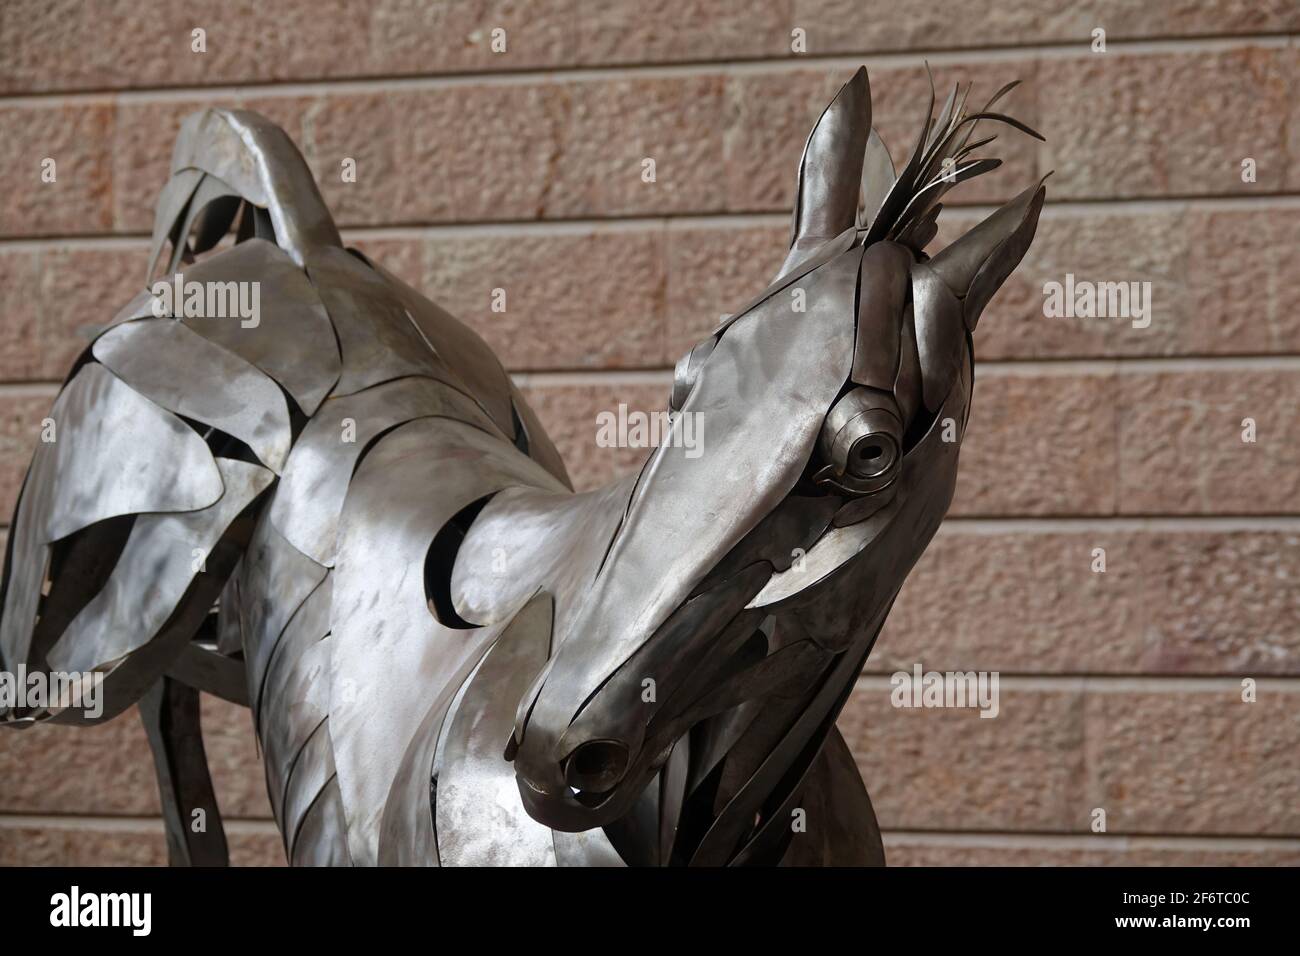 Dardo (caballo de metal de tamaño natural), obra del escultor granadino José Miguel Pino, exhibida en la sala del Moneo en Jaén (España) Foto de stock